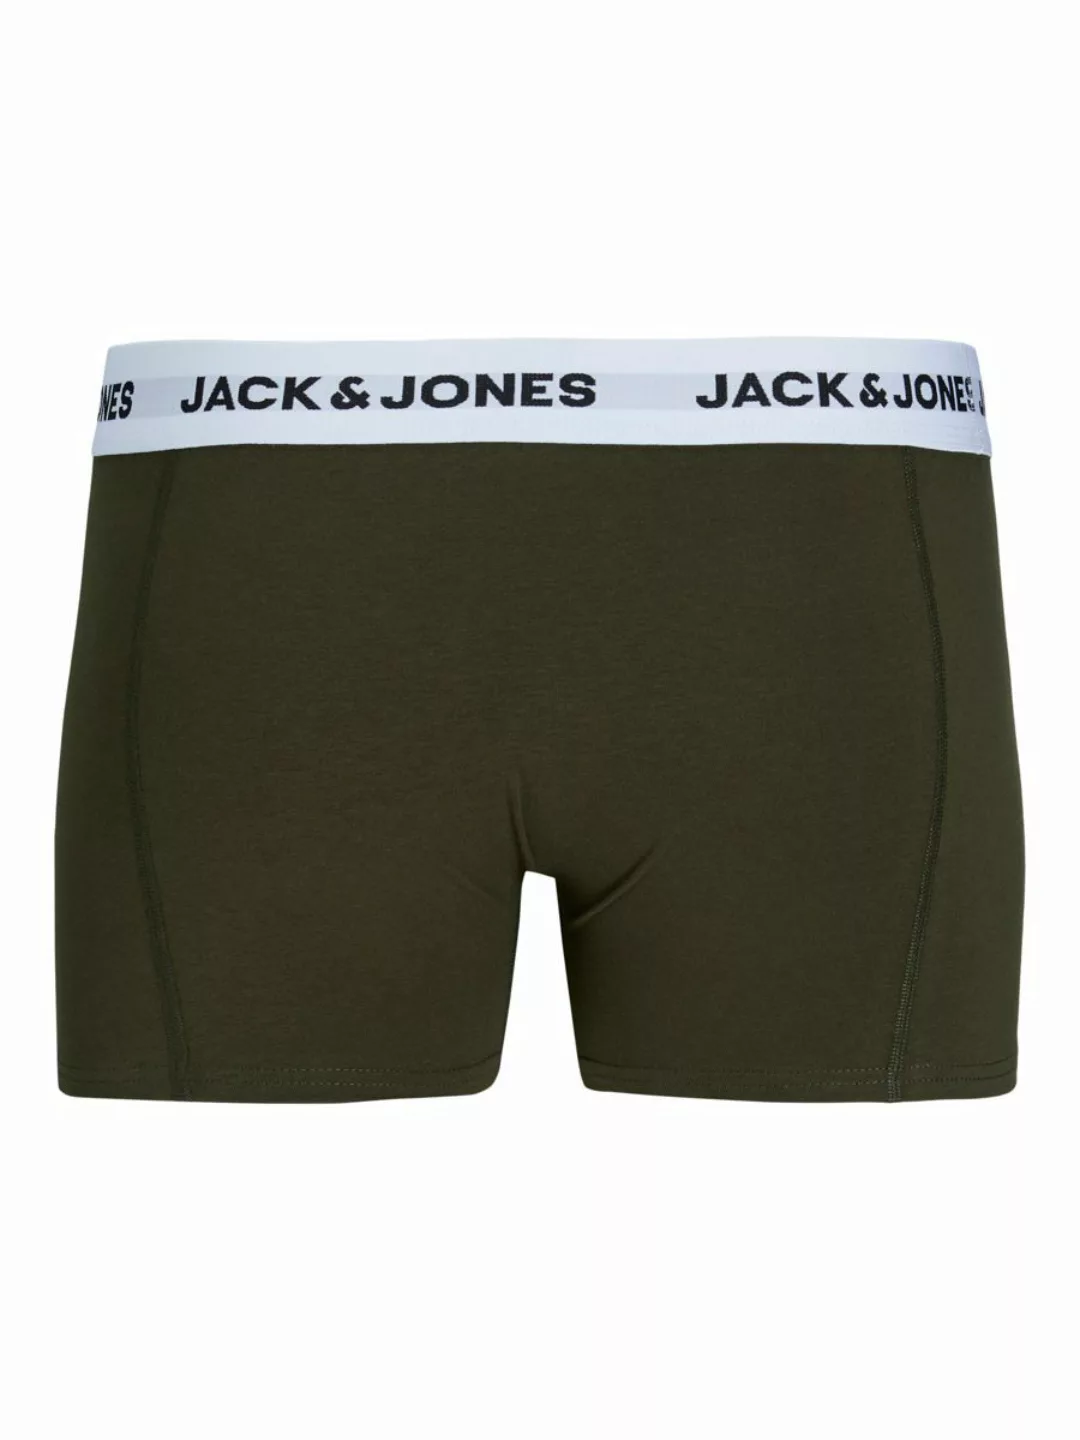 Jack & Jones 5-er Set Trunks Schwarz, Blau, Grün & Grau günstig online kaufen